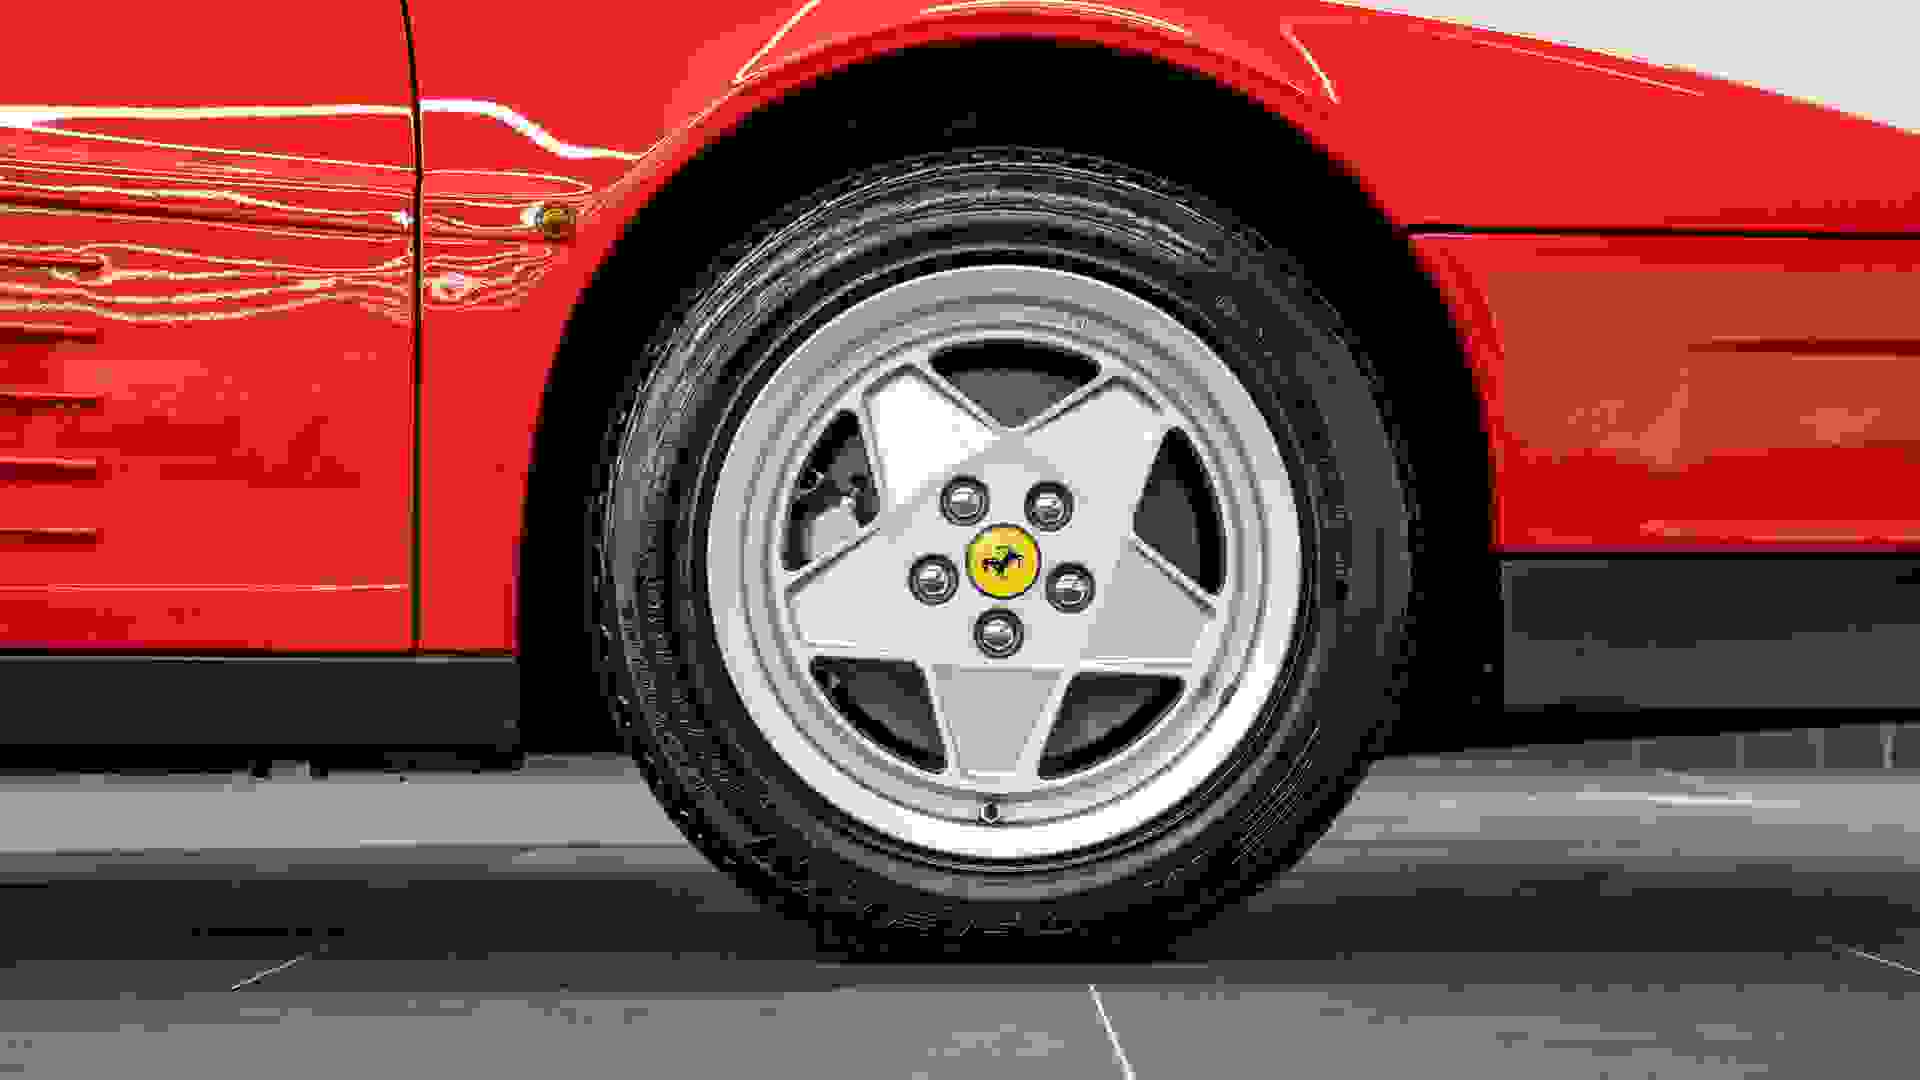 Ferrari Testarossa Photo a71dcdf2-4917-4955-ba77-a2bf4b345905.jpg